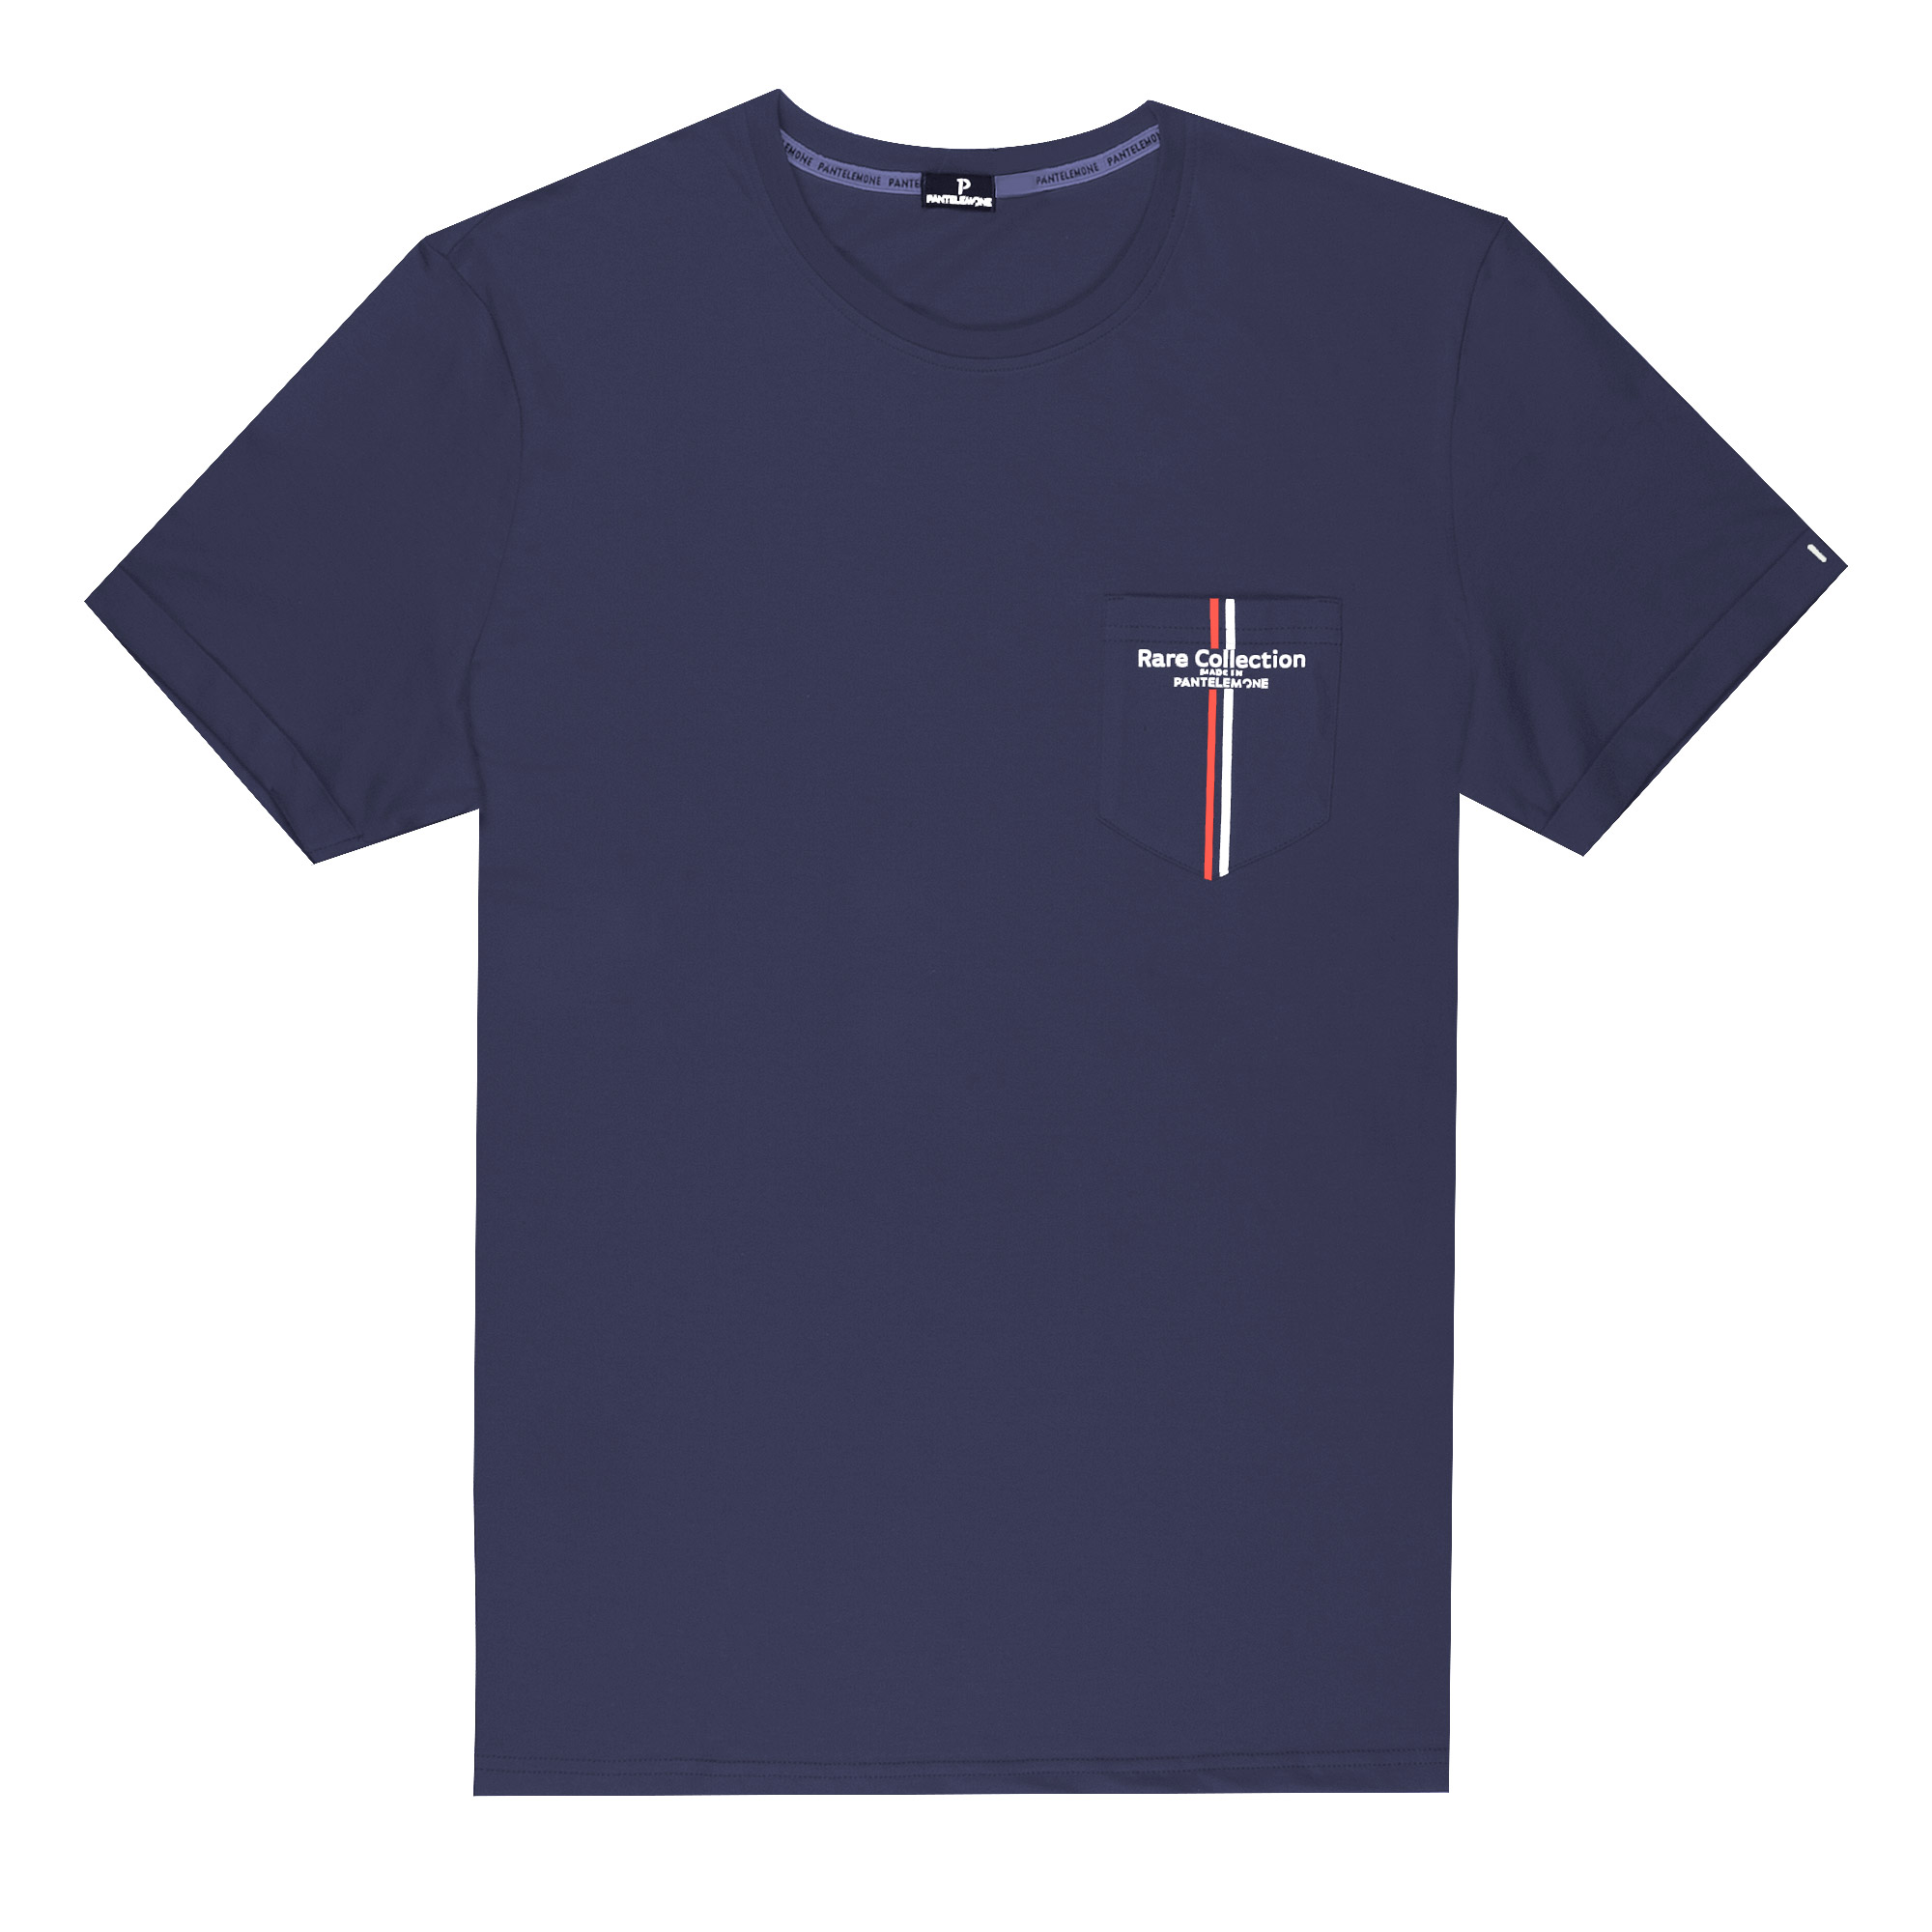 Мужская футболка Pantelemone MF-898 темно-синяя 52, цвет темно-синий, размер 52 - фото 1